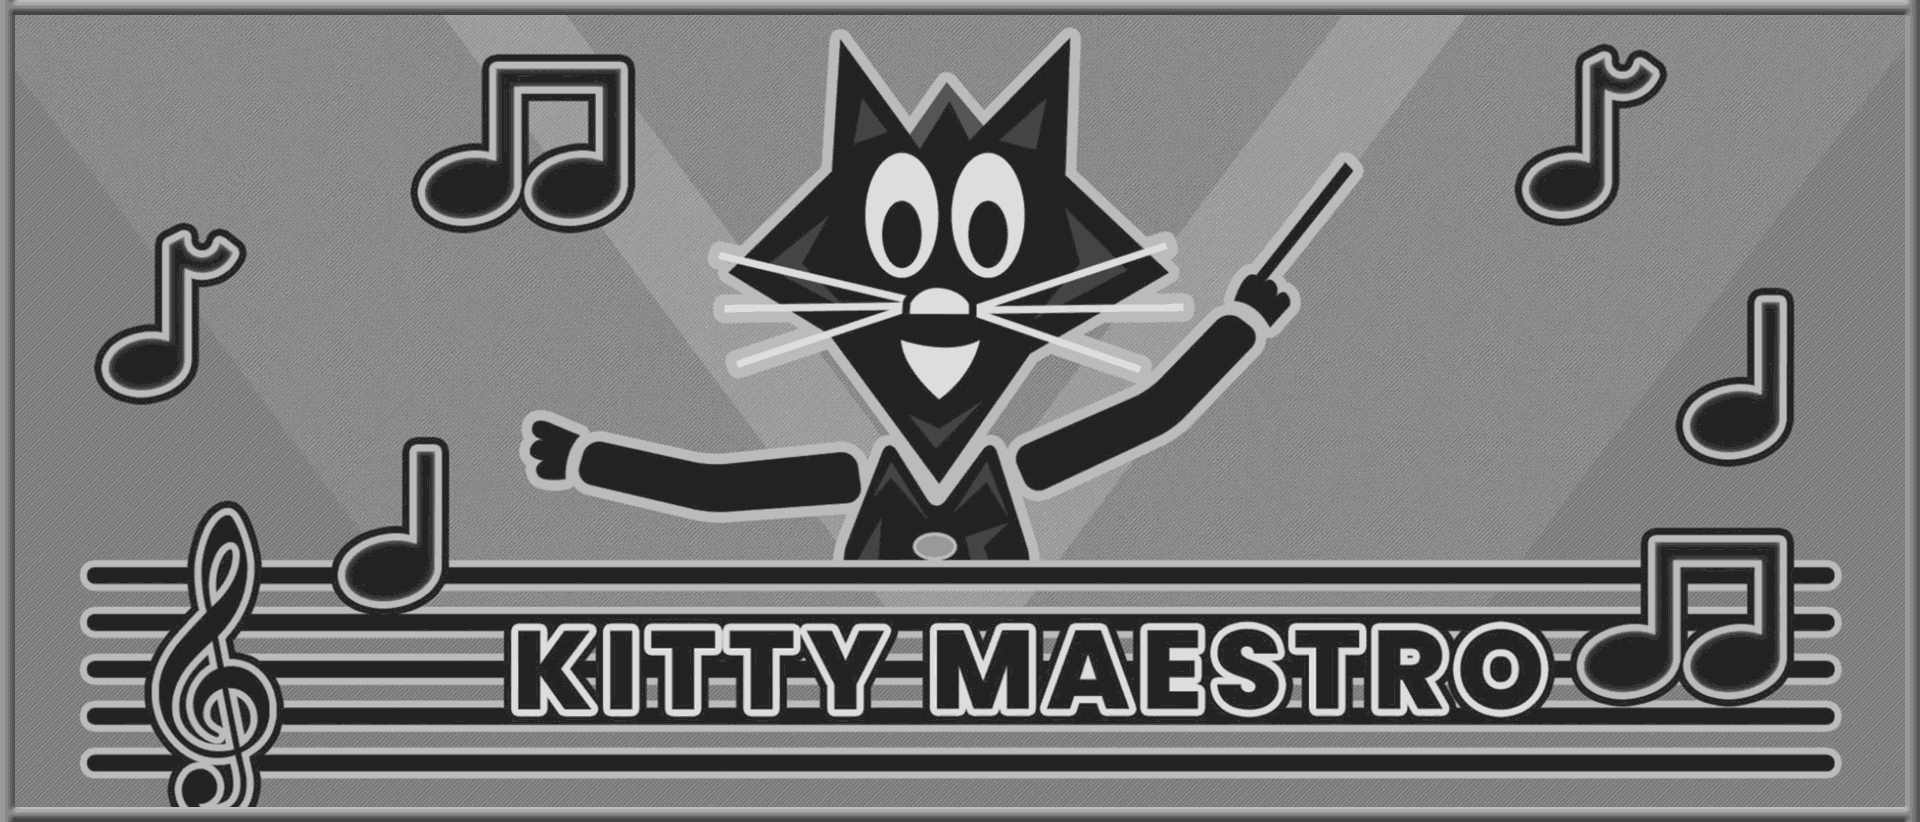 Kitty Maestro